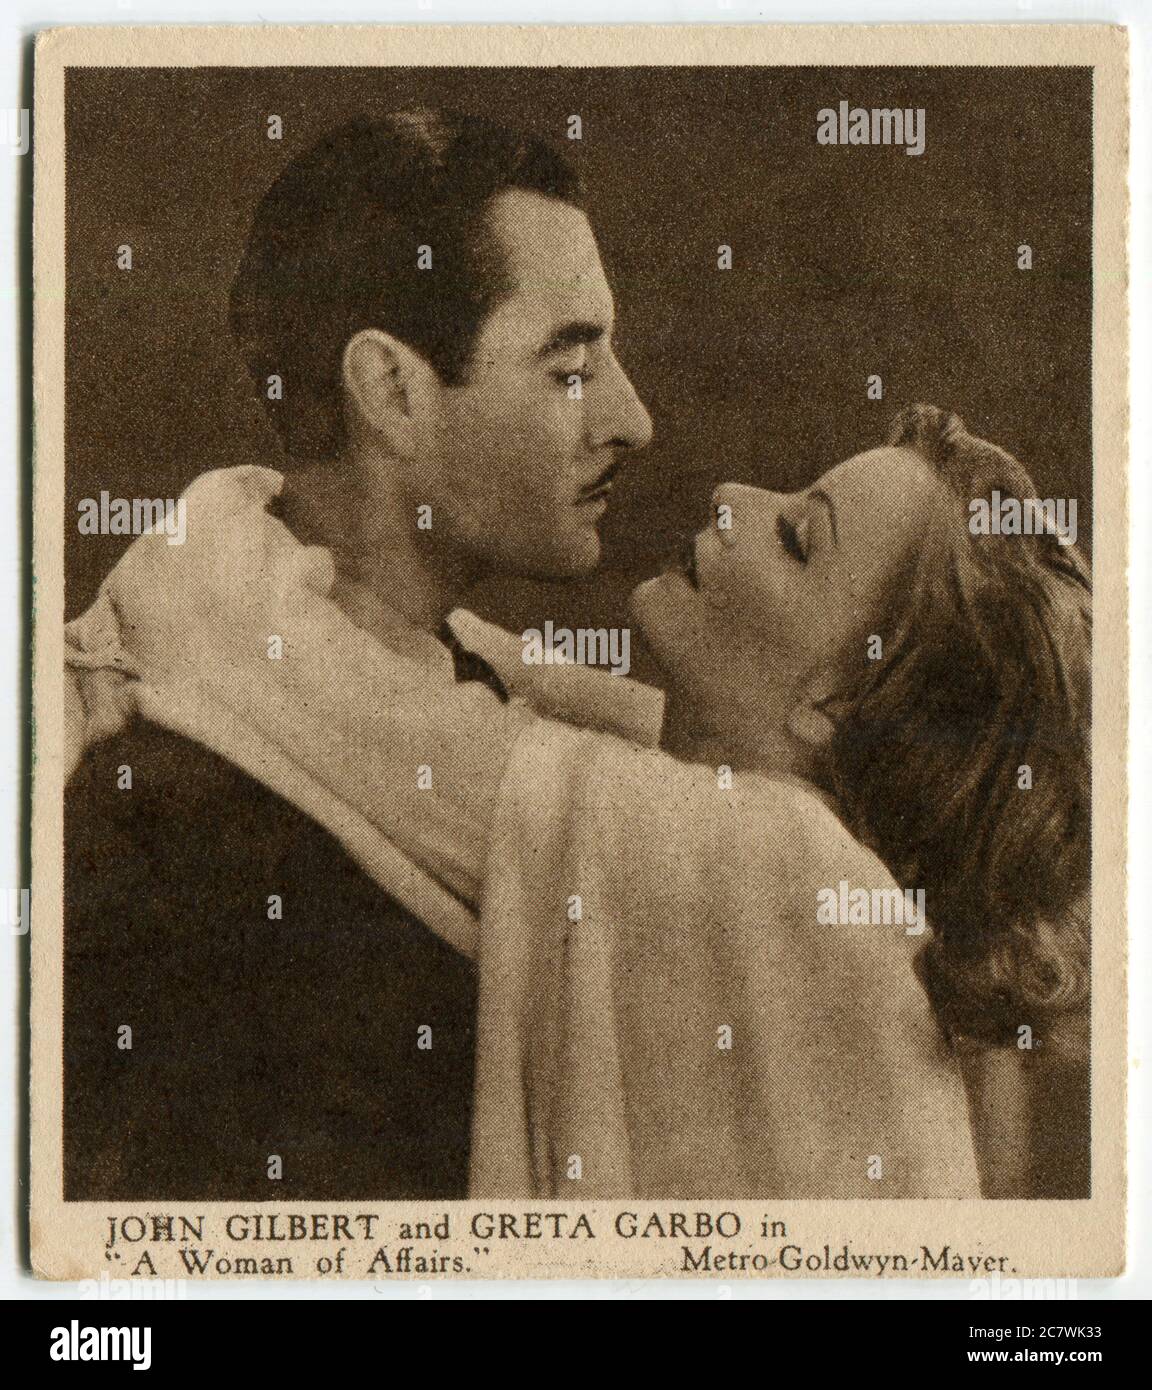 Carte à cigarettes Kensitas pour les « Love Scenes from Famous films » - John Gilbert et Greta Gabo dans « A Woman of Affairs ». Deuxième série publiée en 1932 par J. Wix & Sons Ltd Banque D'Images